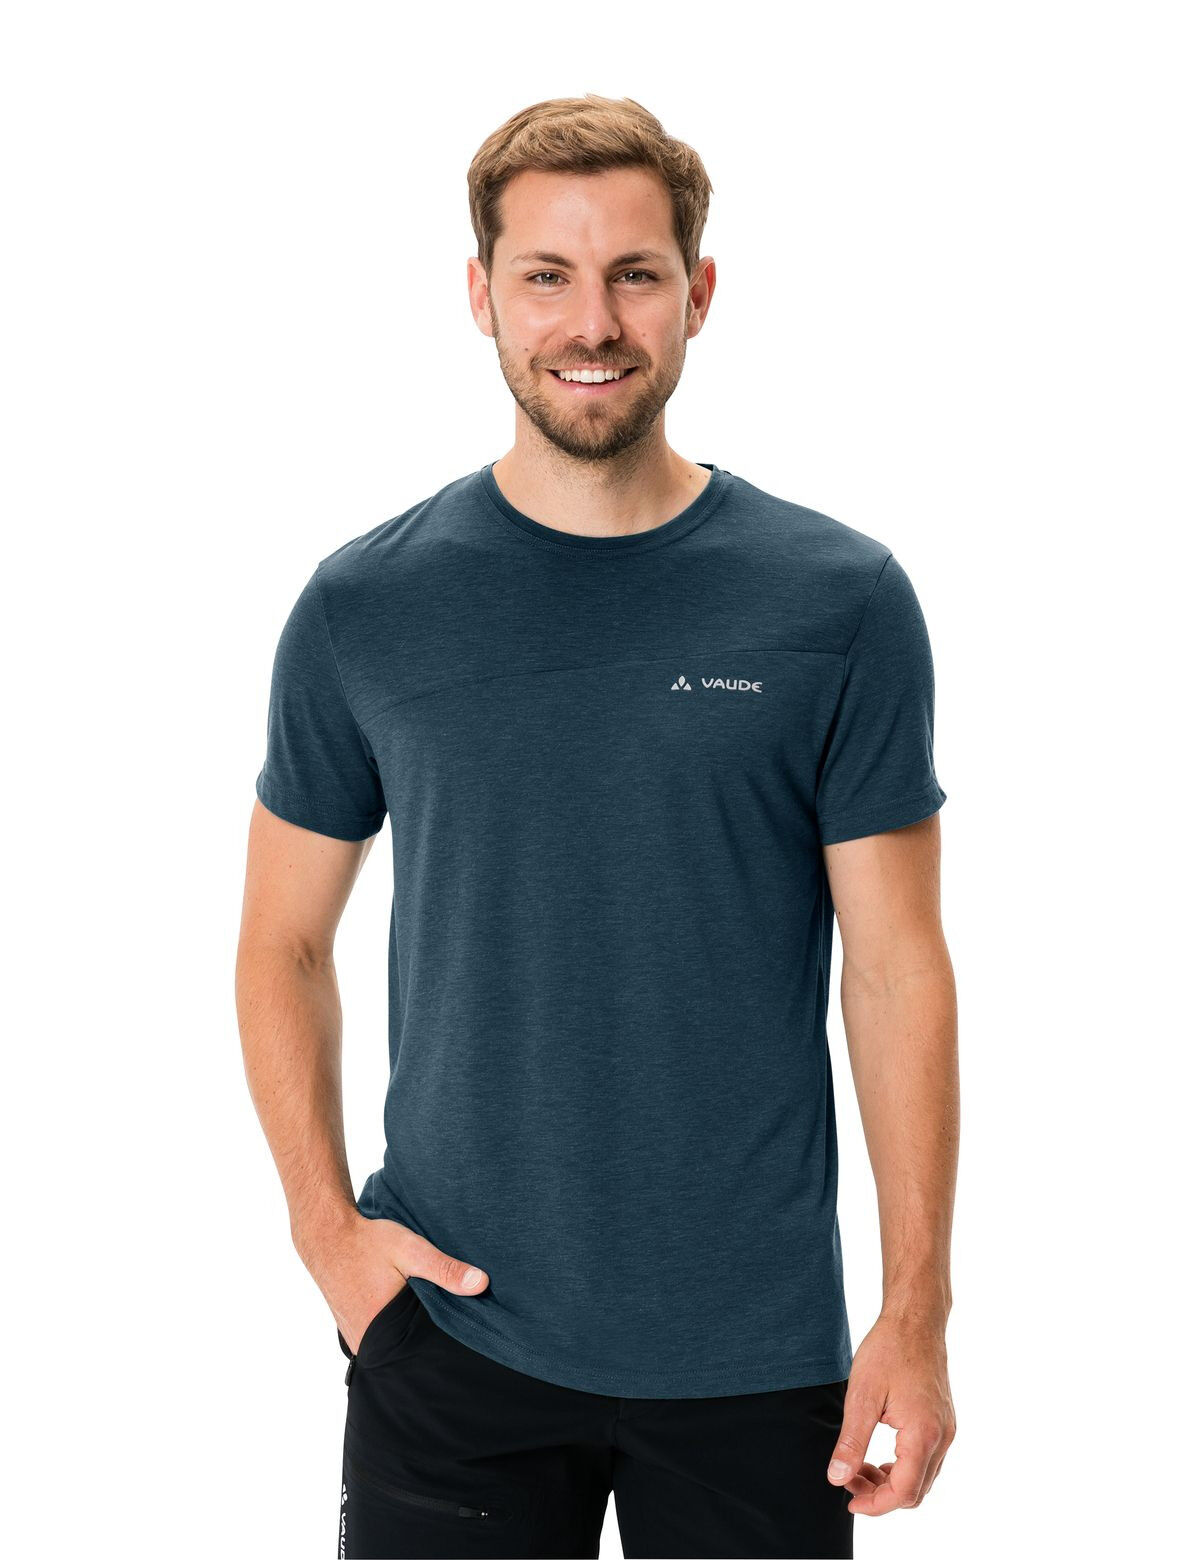 Vaude - Sveit T-Shirt - T-shirt - Uomo